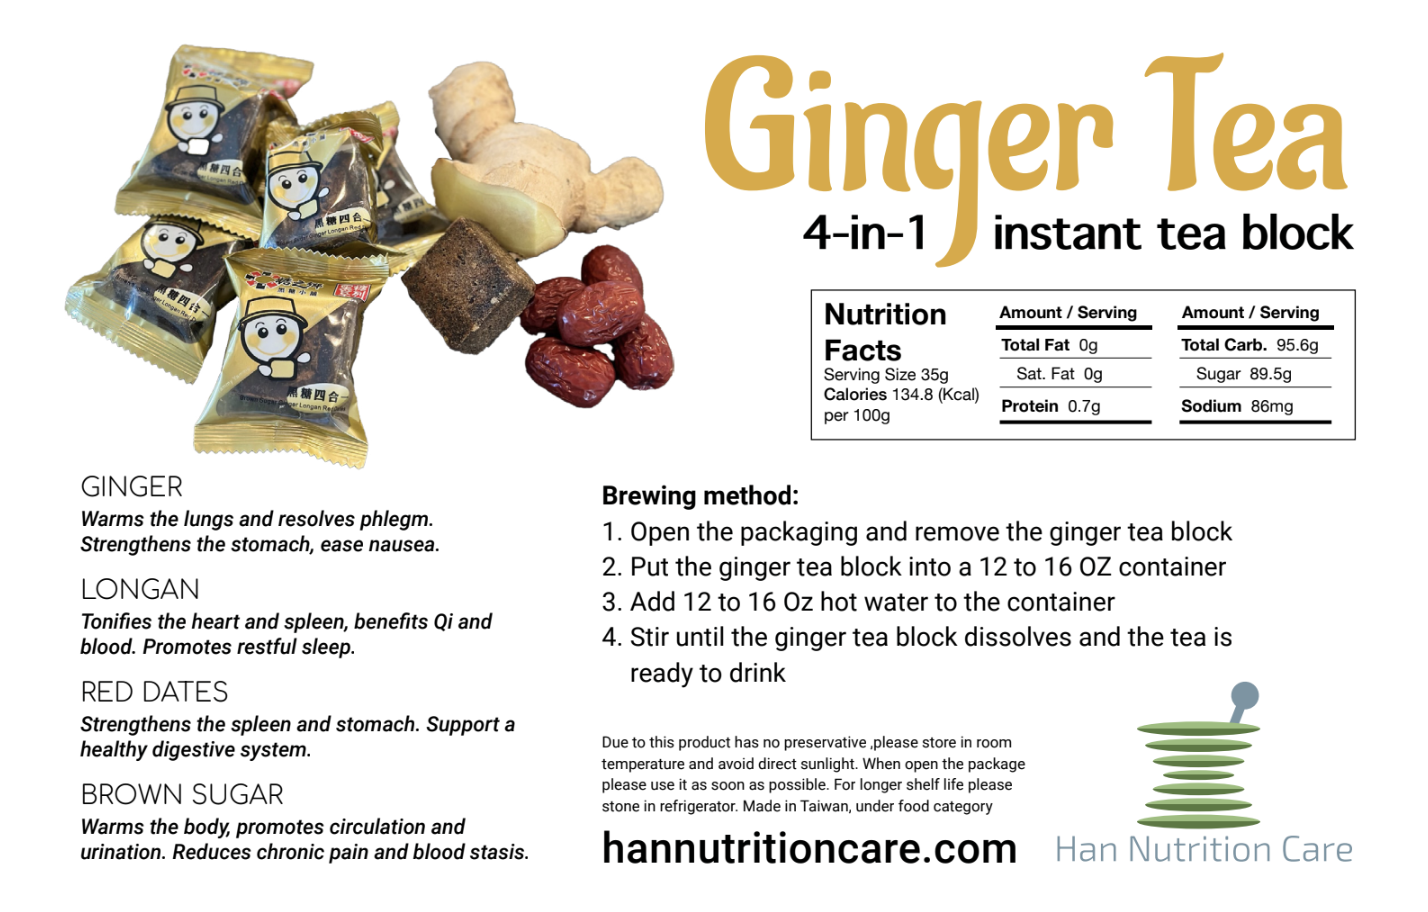 Ginger Tea - Ginger, Longan, Red Dates, and Brwon Sugar - 4-in-1 instant tea block